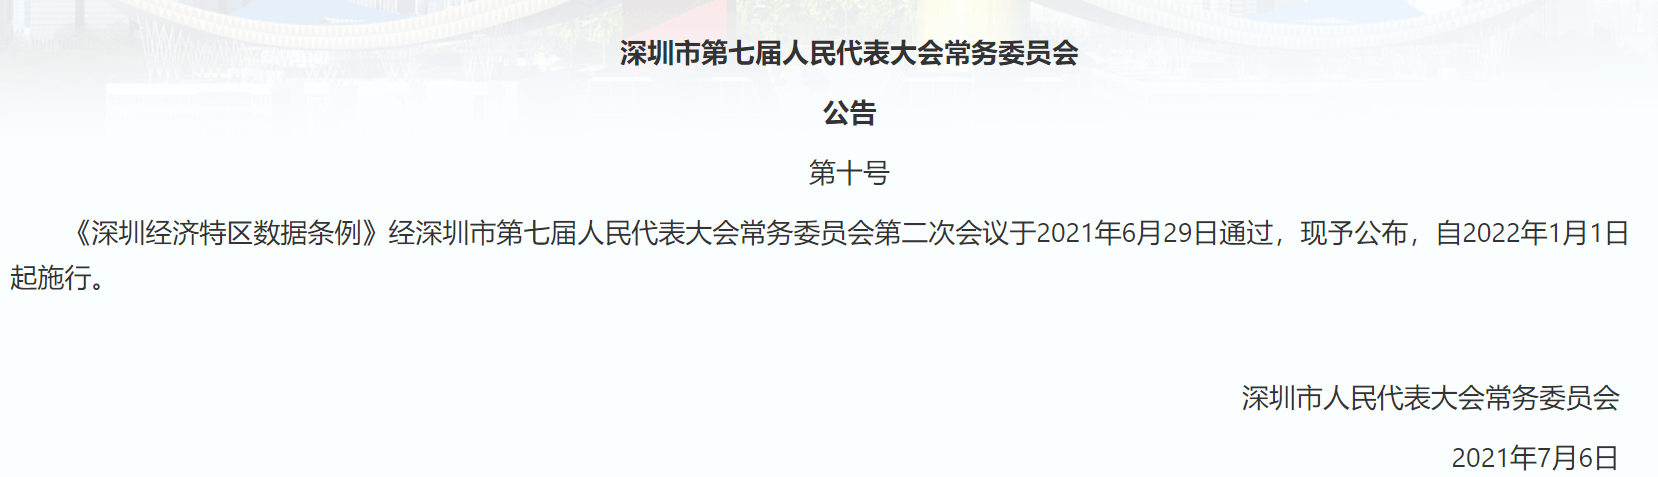 深圳经济特区数据条例正式公布 禁止APP“不全面授权就不让用”(图1)